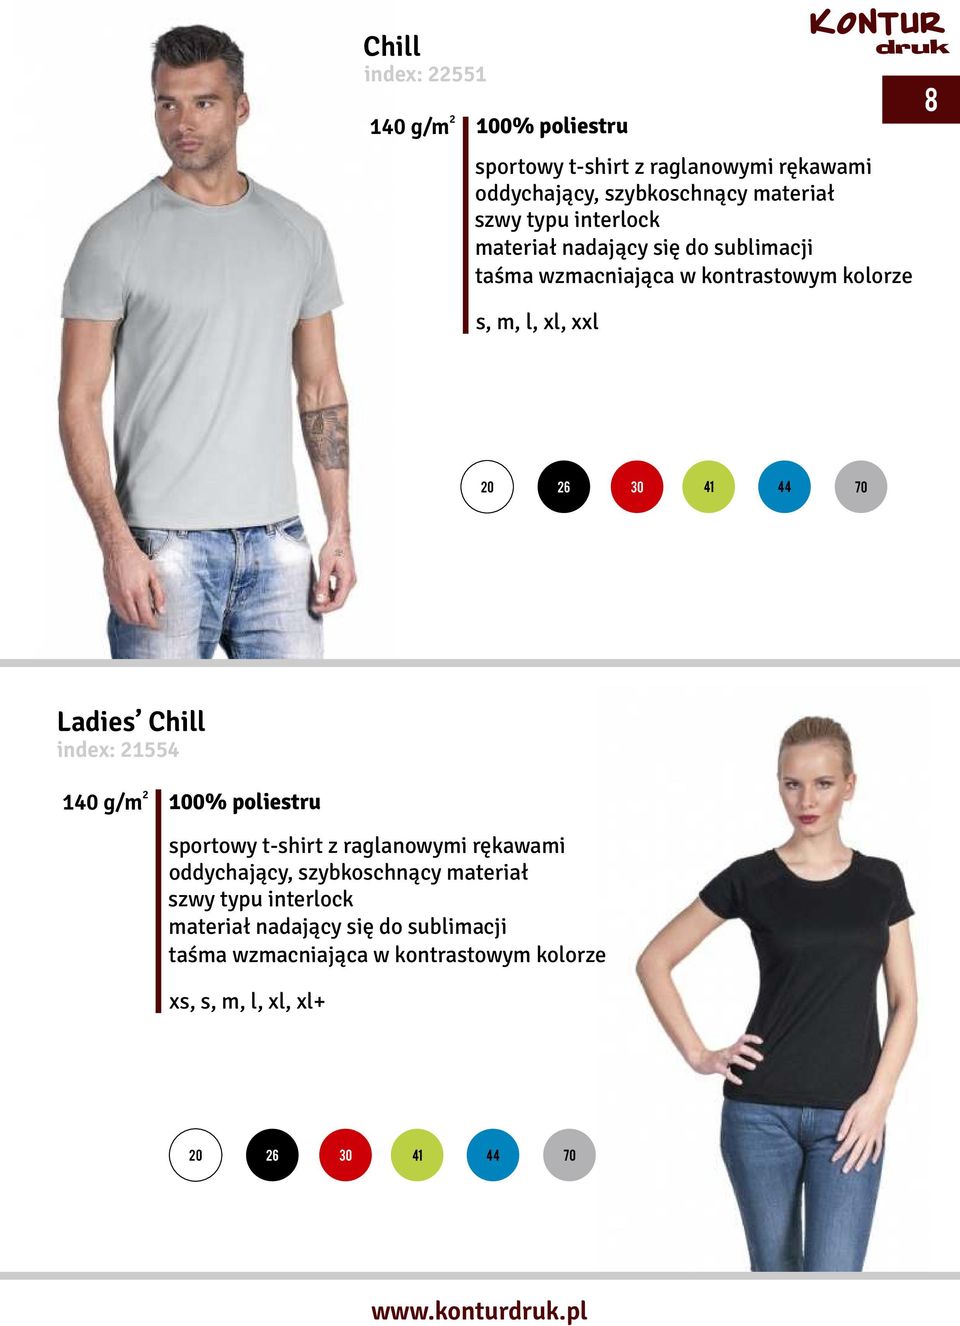 Ladies Chill index: 1554 140 g/m 100% poliestru sportowy t-shirt z raglanowymi rękawami oddychający, szybkoschnący